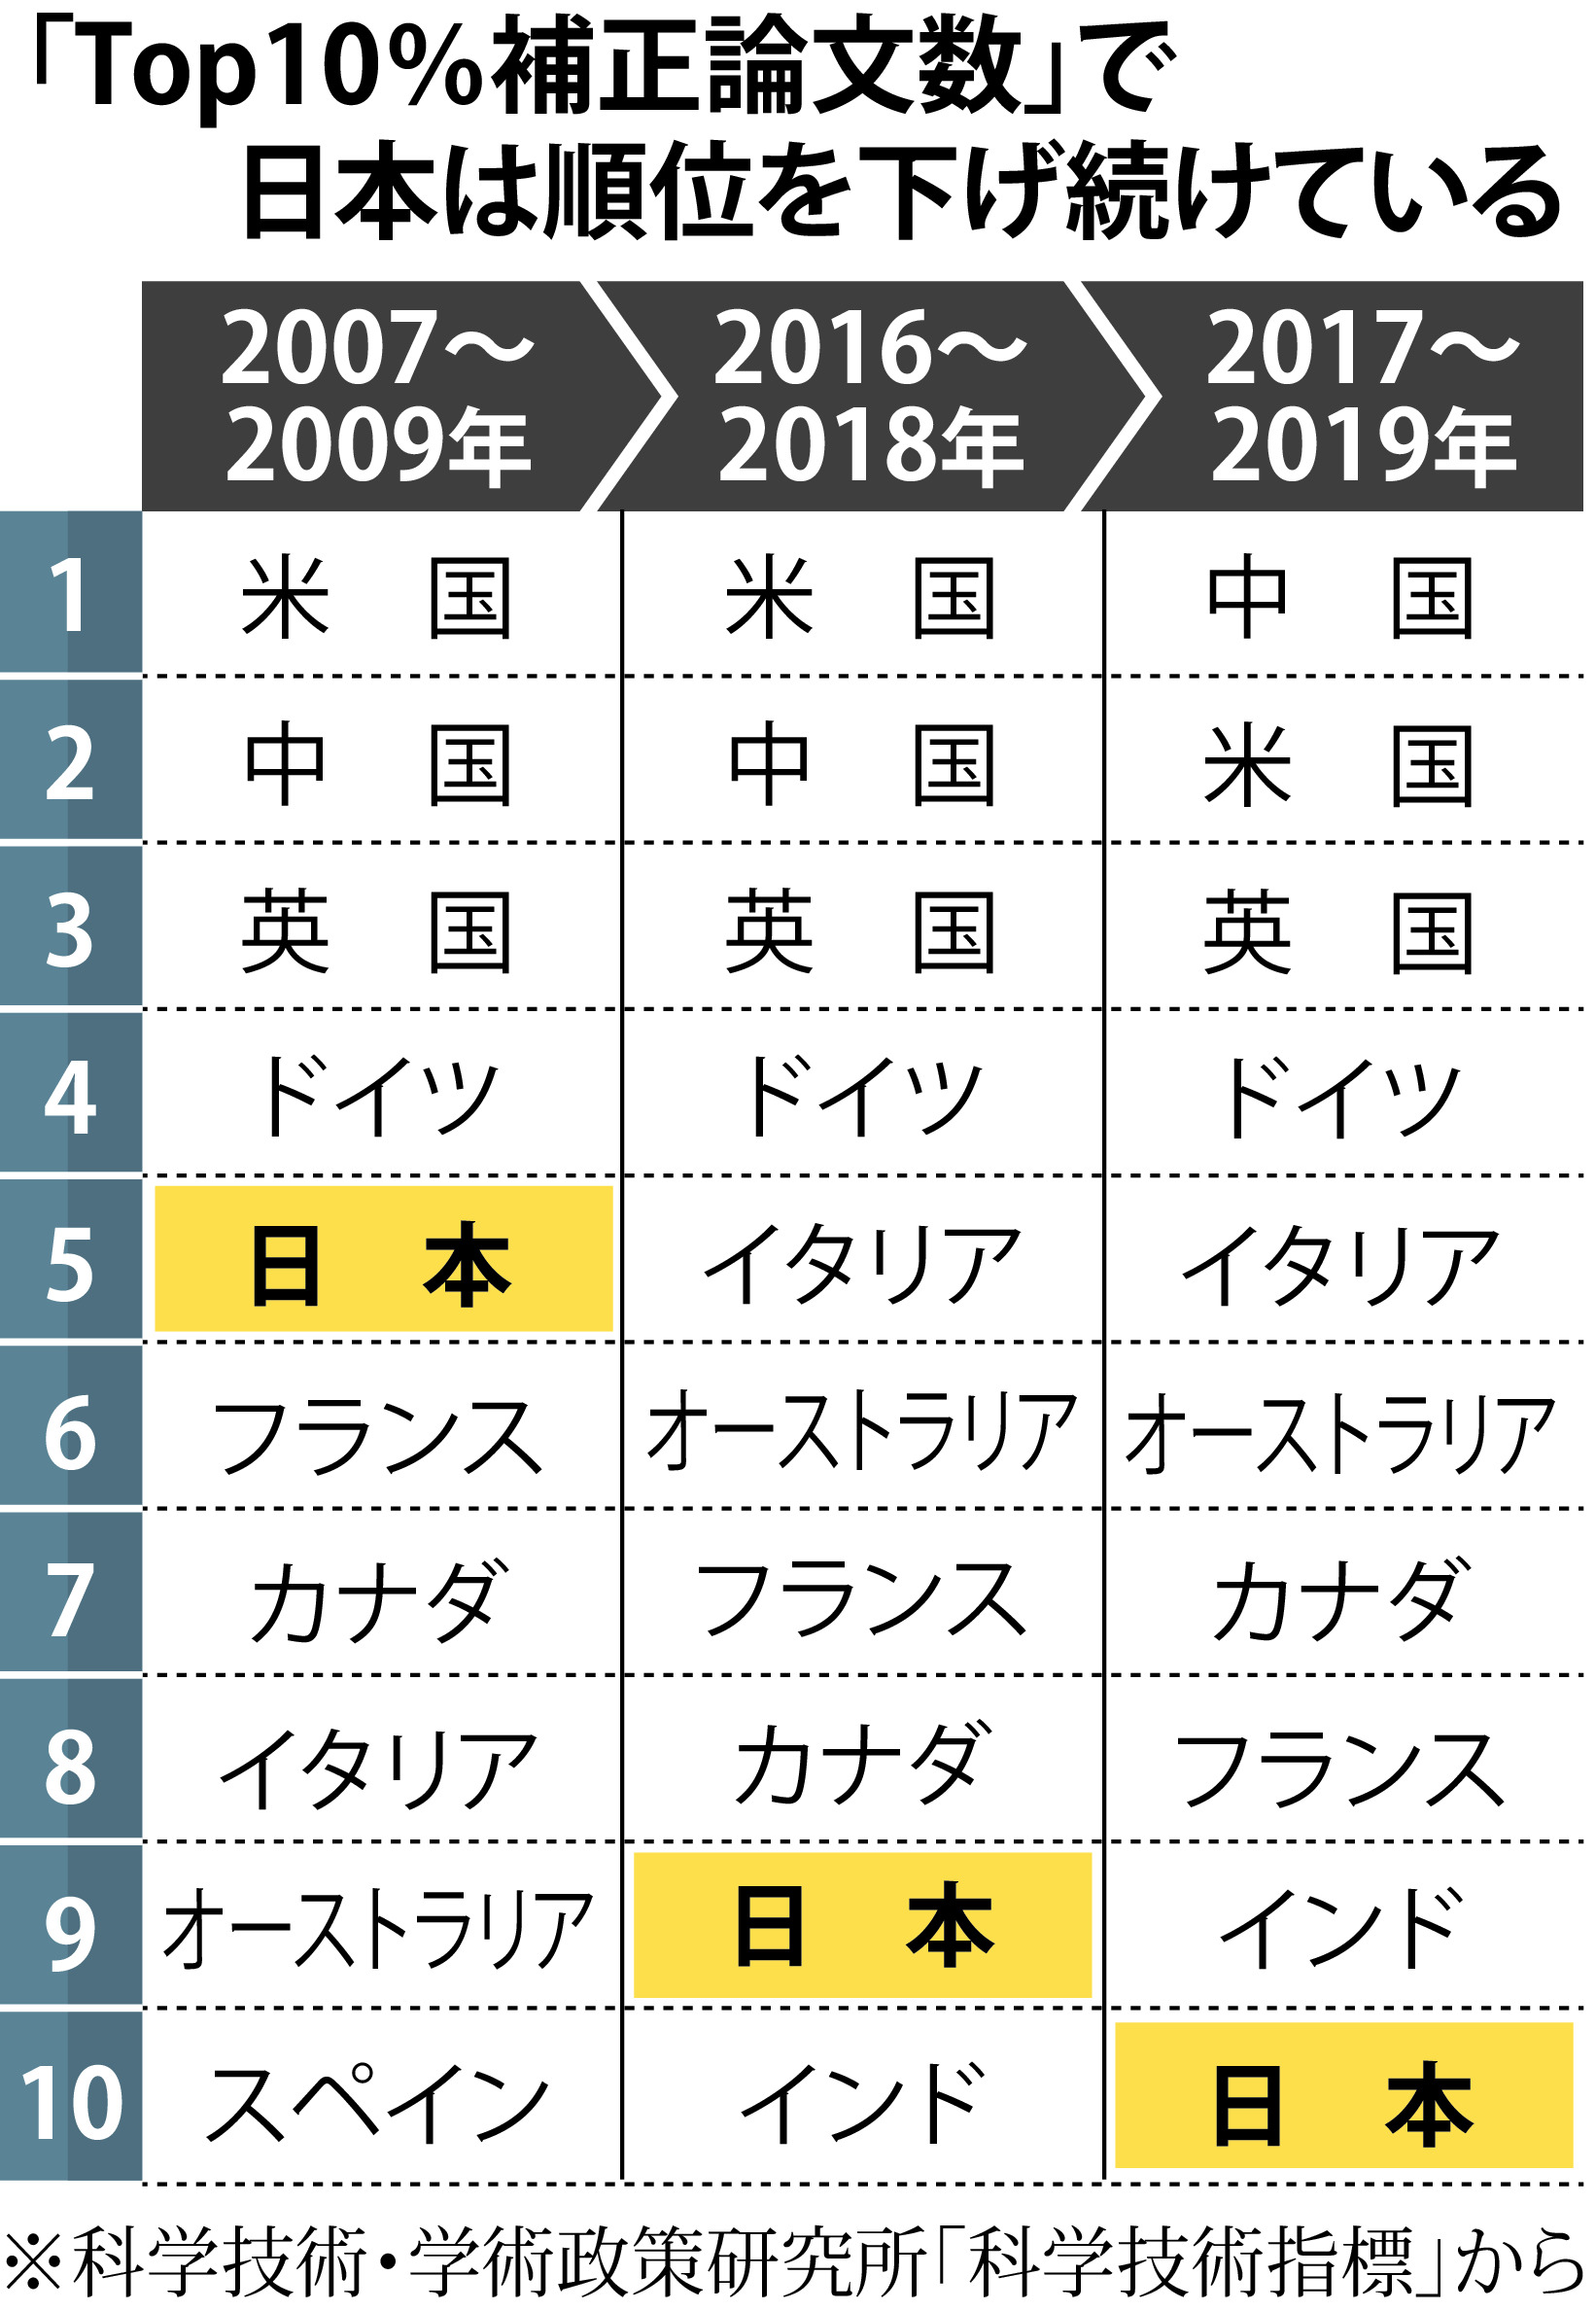 日本の注目論文は過去最低１０位 国際的地位低下 産経ニュース